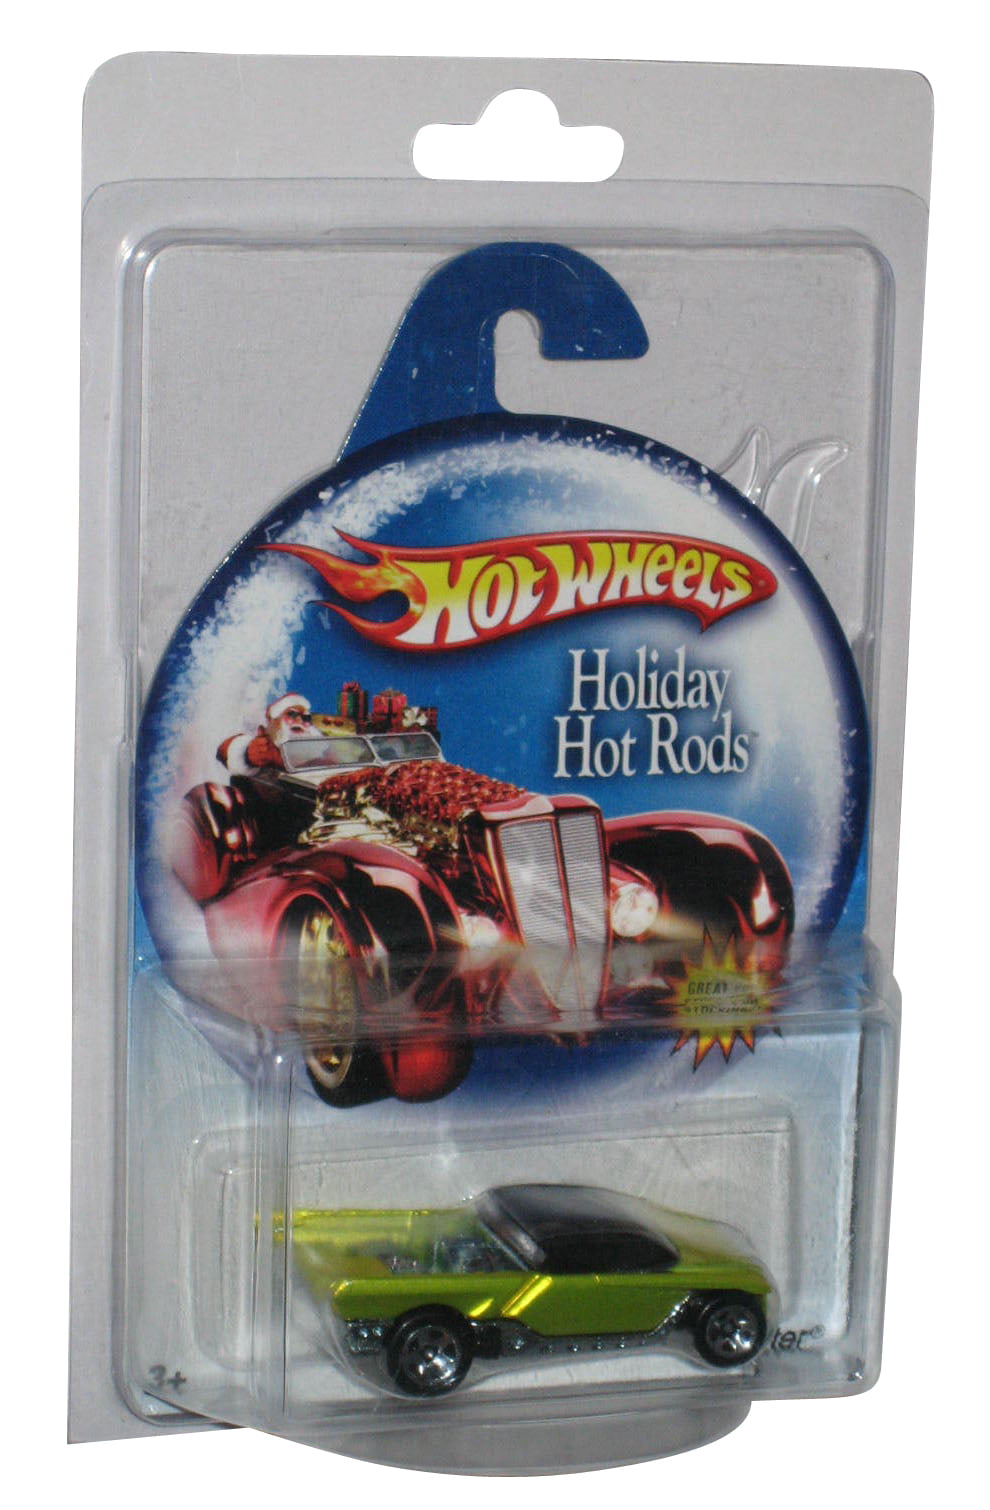 2014 Holiday Hot Rods #7 DRAGGIN' WAGON∞Brown/Red❊Santa❊25∞Hot Wheels Walmart 